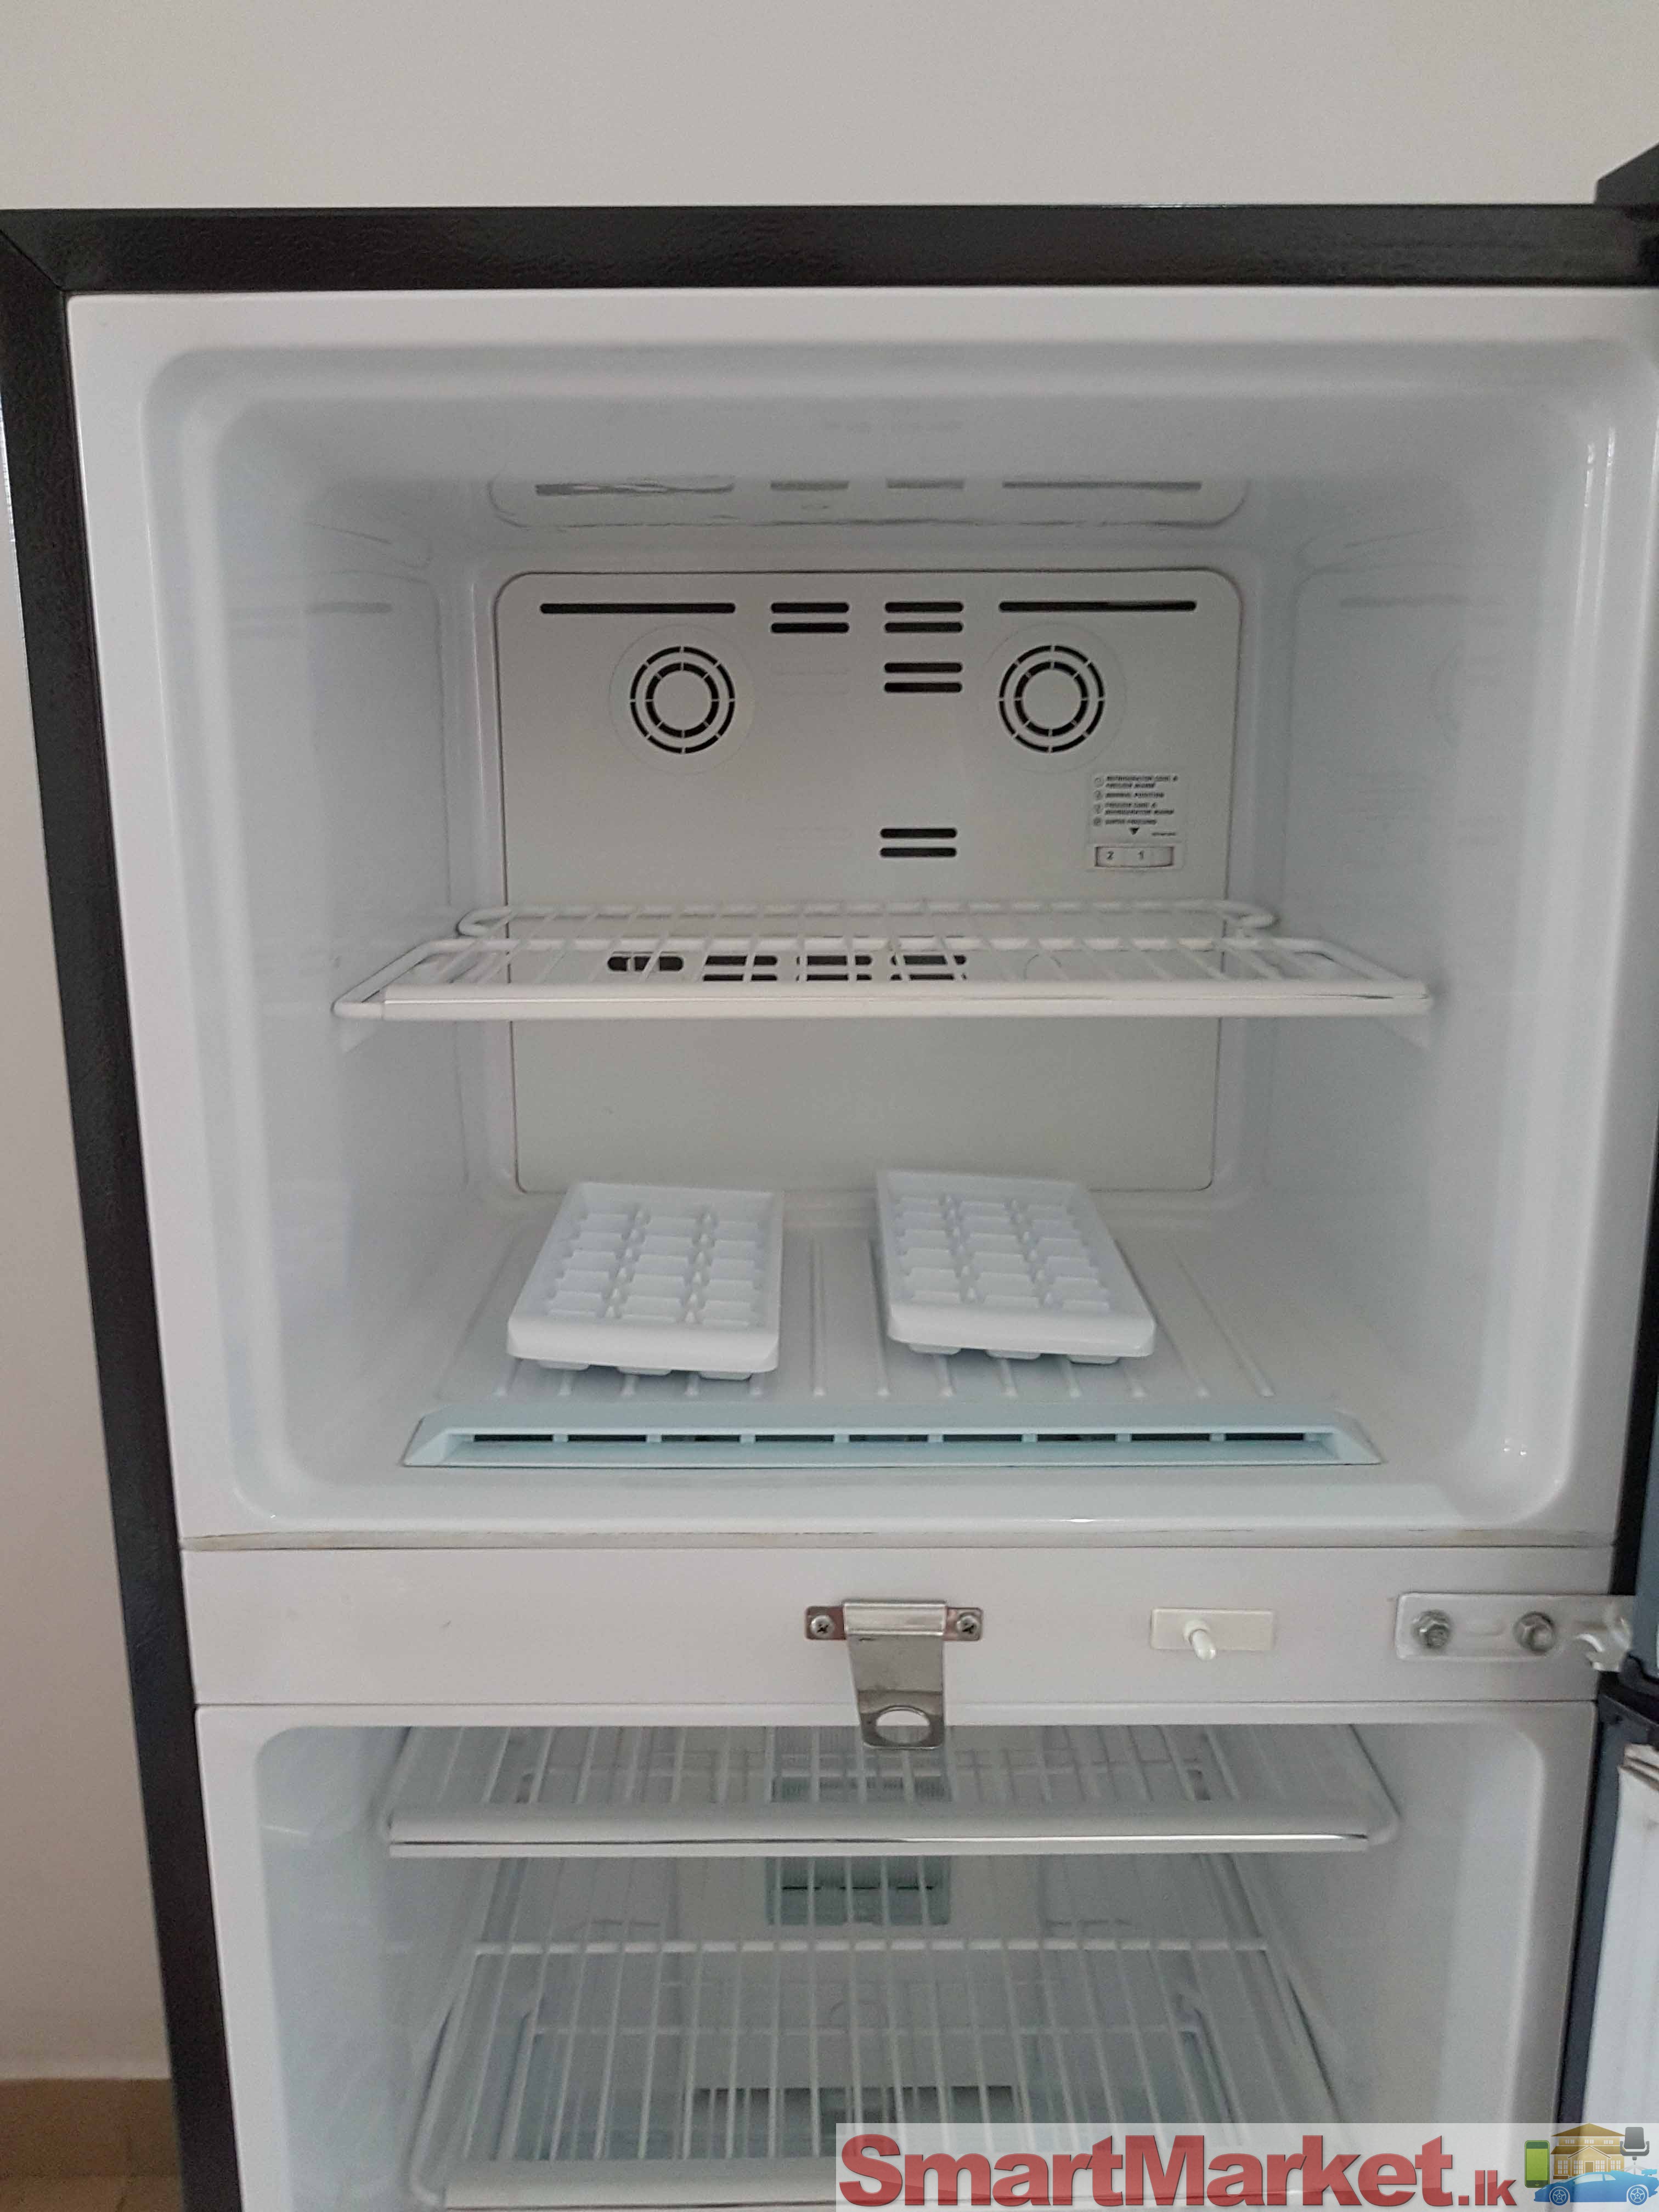 LG double door refrigerator / fridge